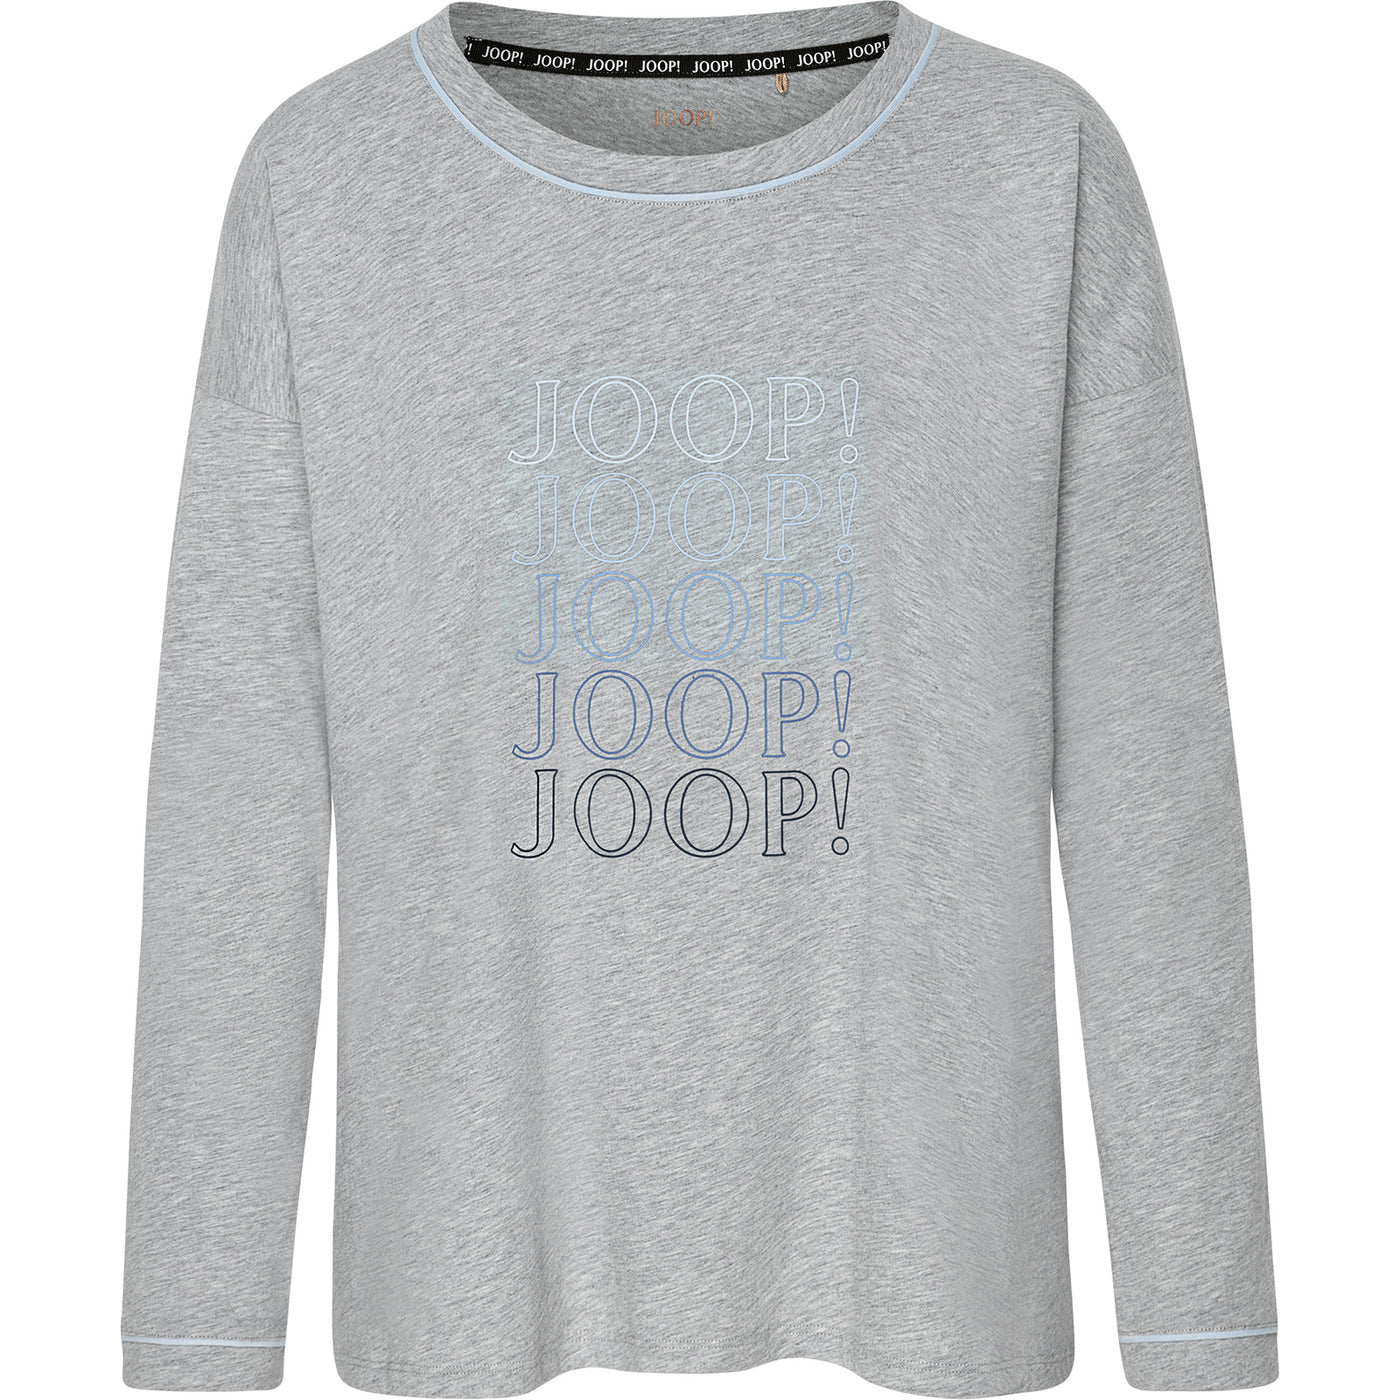 JOOP! Shirt Long Sleeve mit Statement-Logo